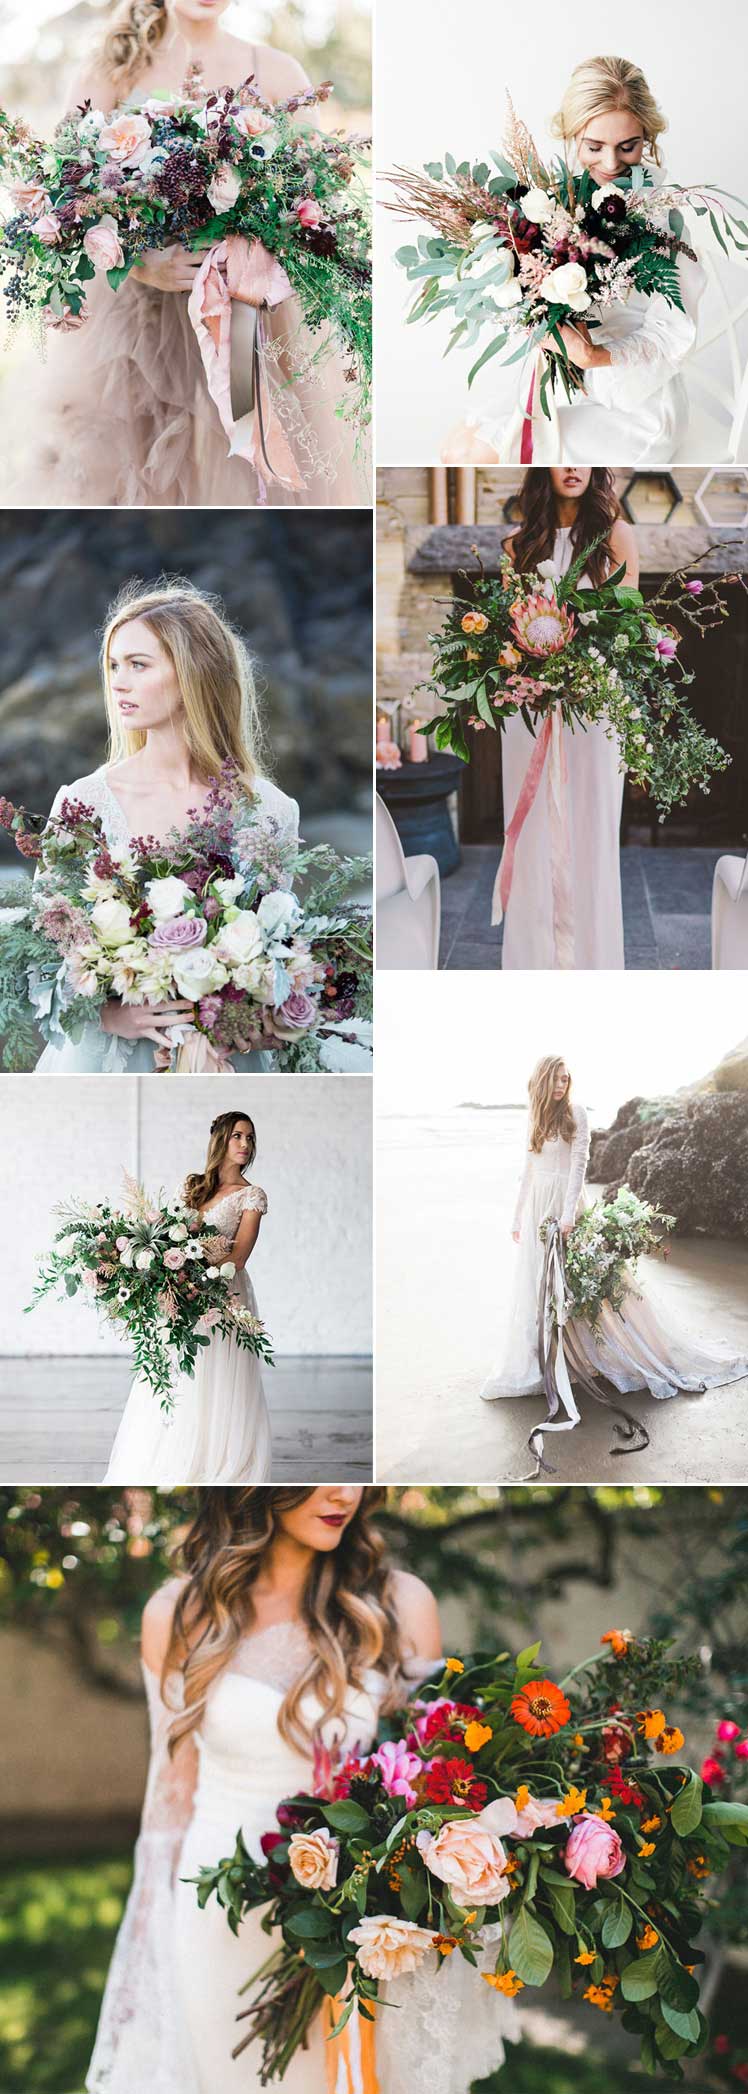 Inspiration for choosing an oversized wedding bouquet